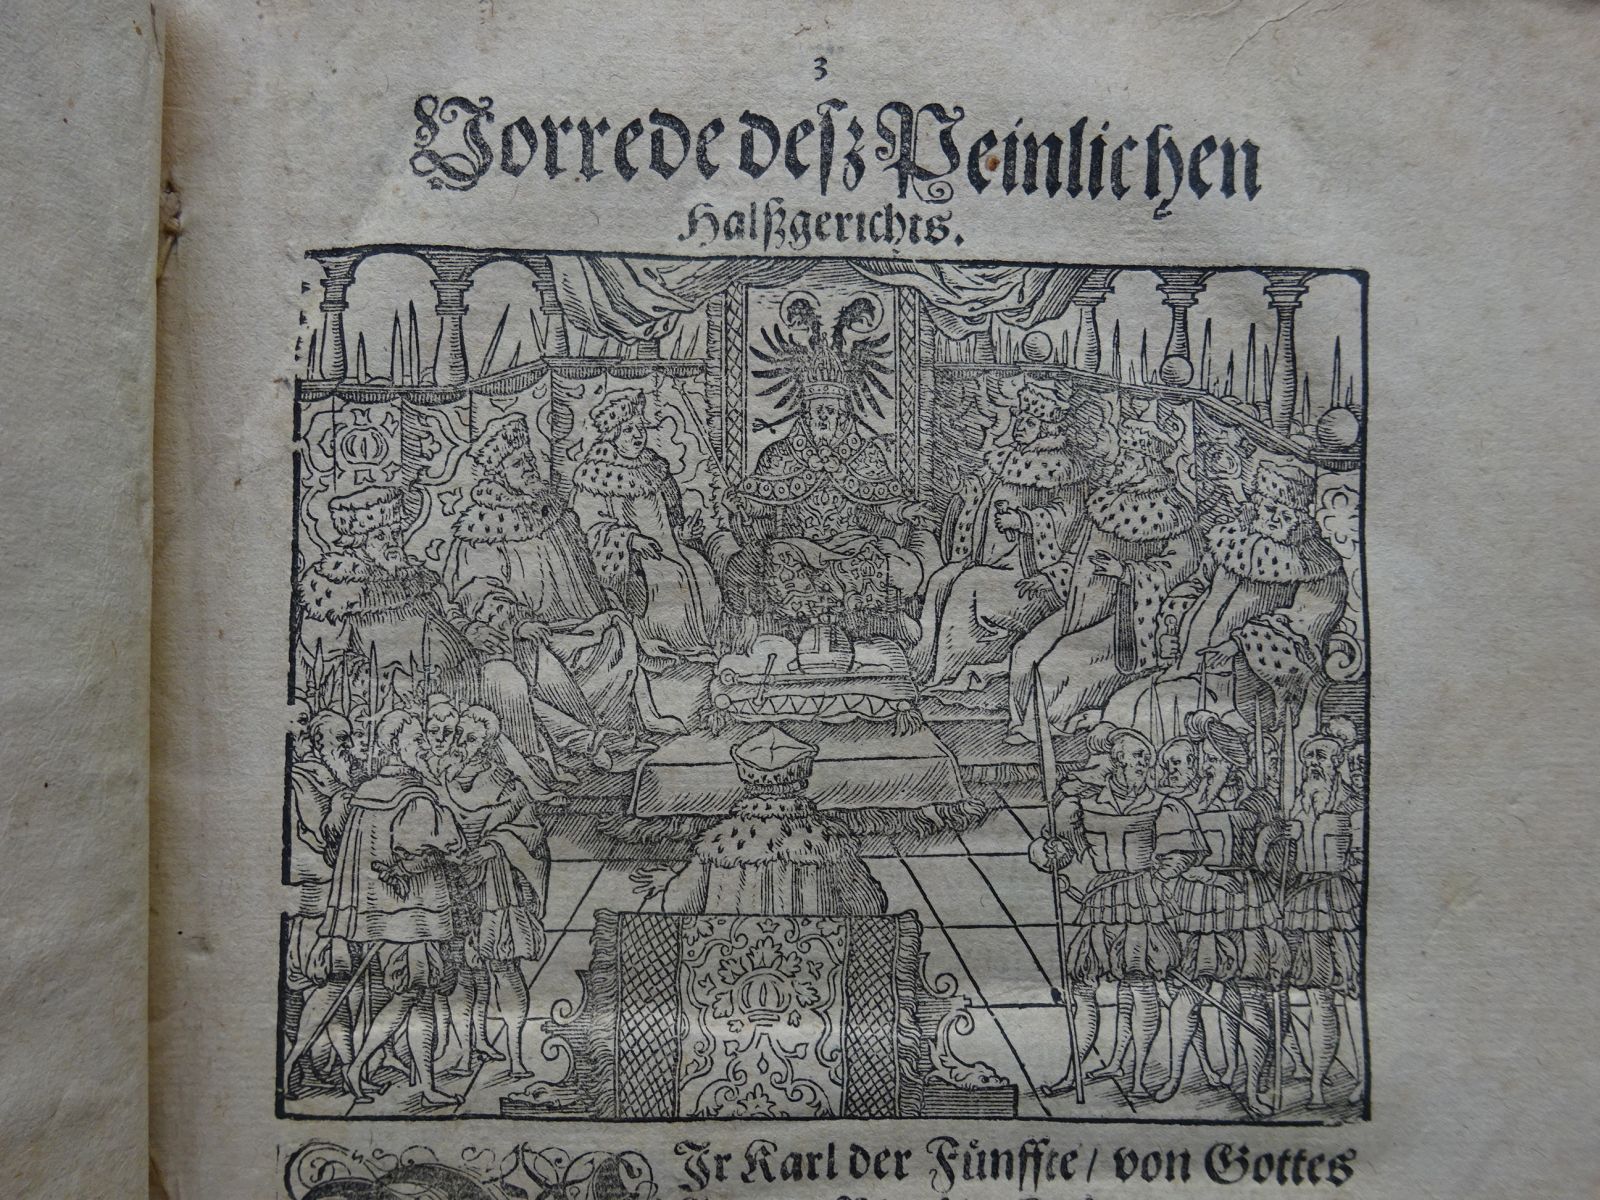 Karl V. - Peinlich Halßgericht 1609 - Image 3 of 6